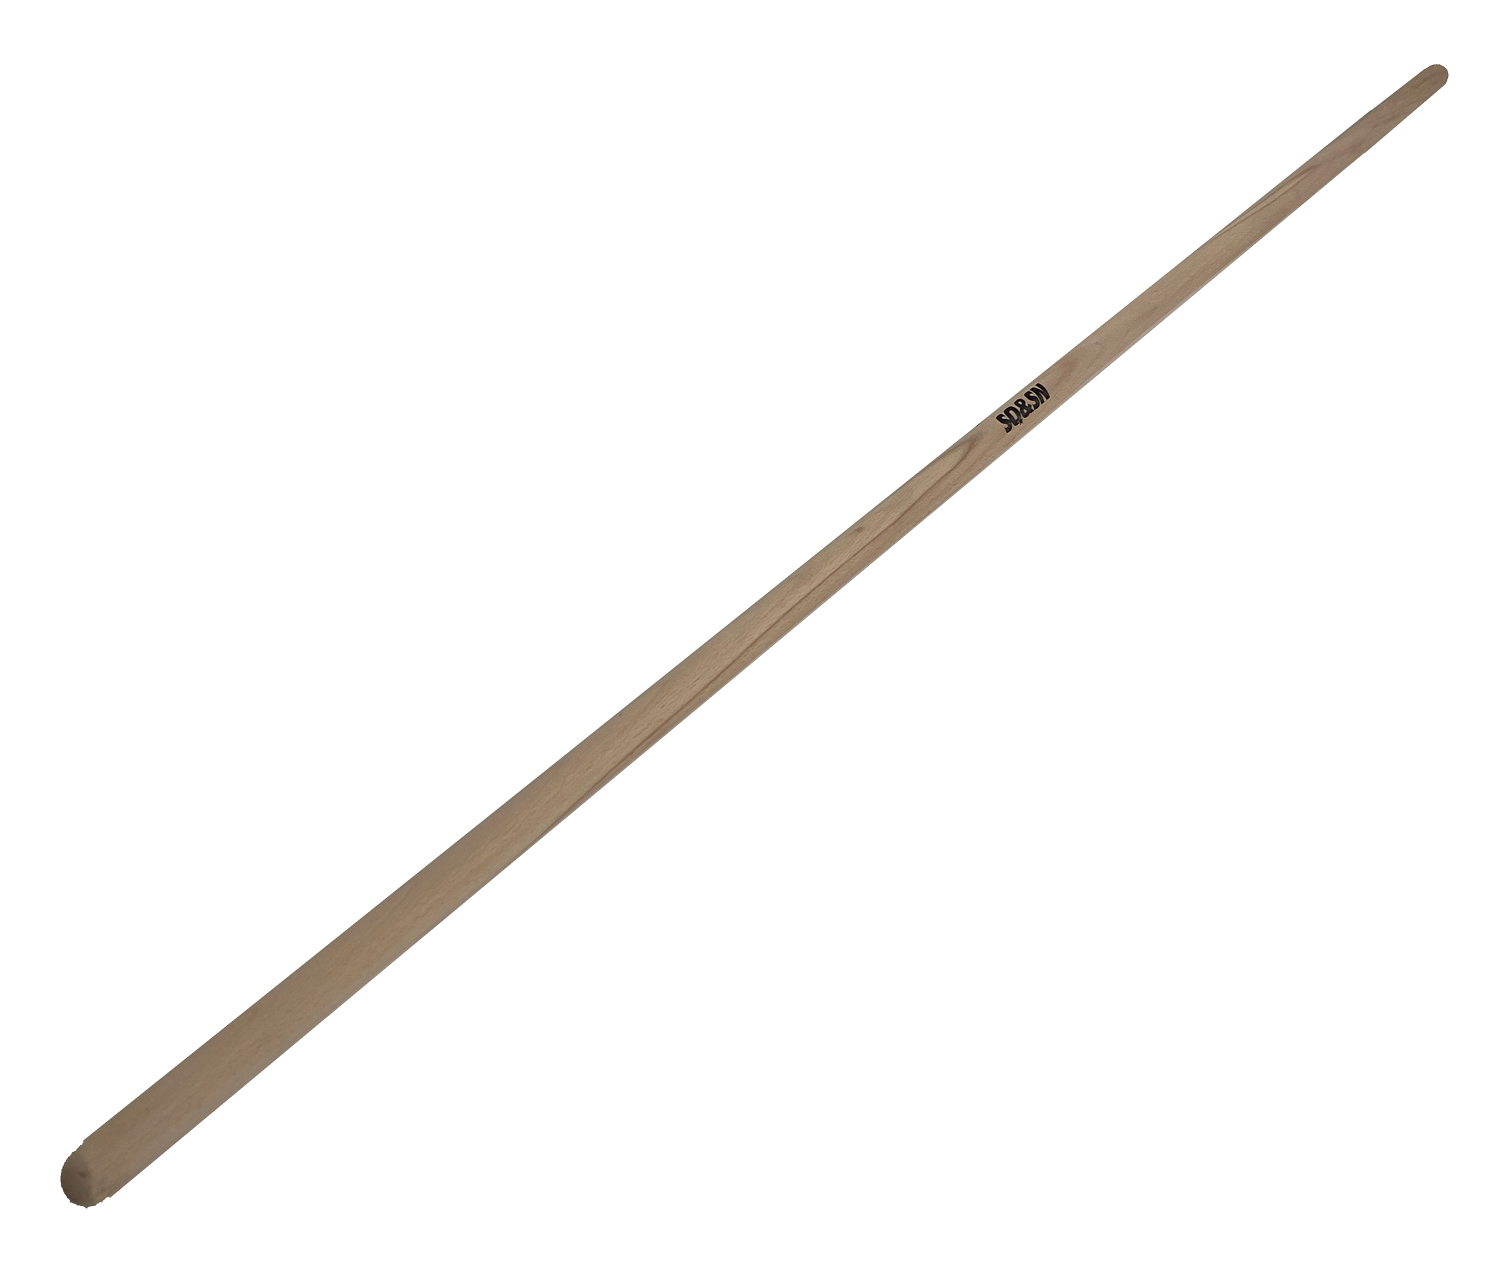 SQ&SN Mobility Stick - Udstræningspind i bøg. L: 150 cm, Ø: 2,7 cm thumbnail